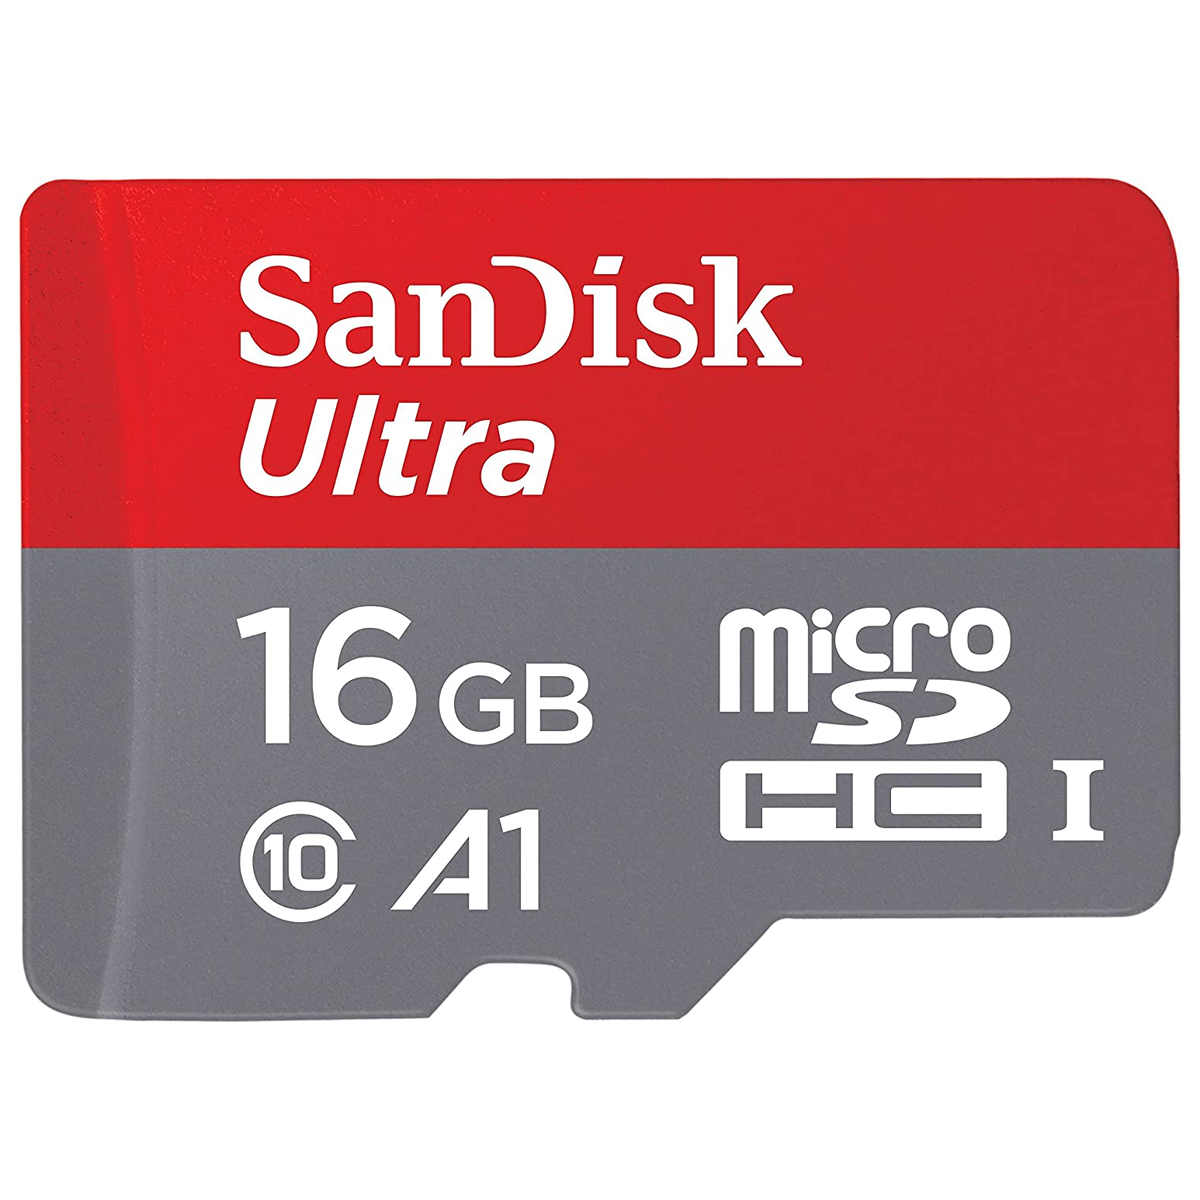  کارت حافظه microSDHC سن دیسک مدل Ultra A1 کلاس 10 استاندارد UHS-I سرعت 98MBps ظرفیت 16 گیگابایت